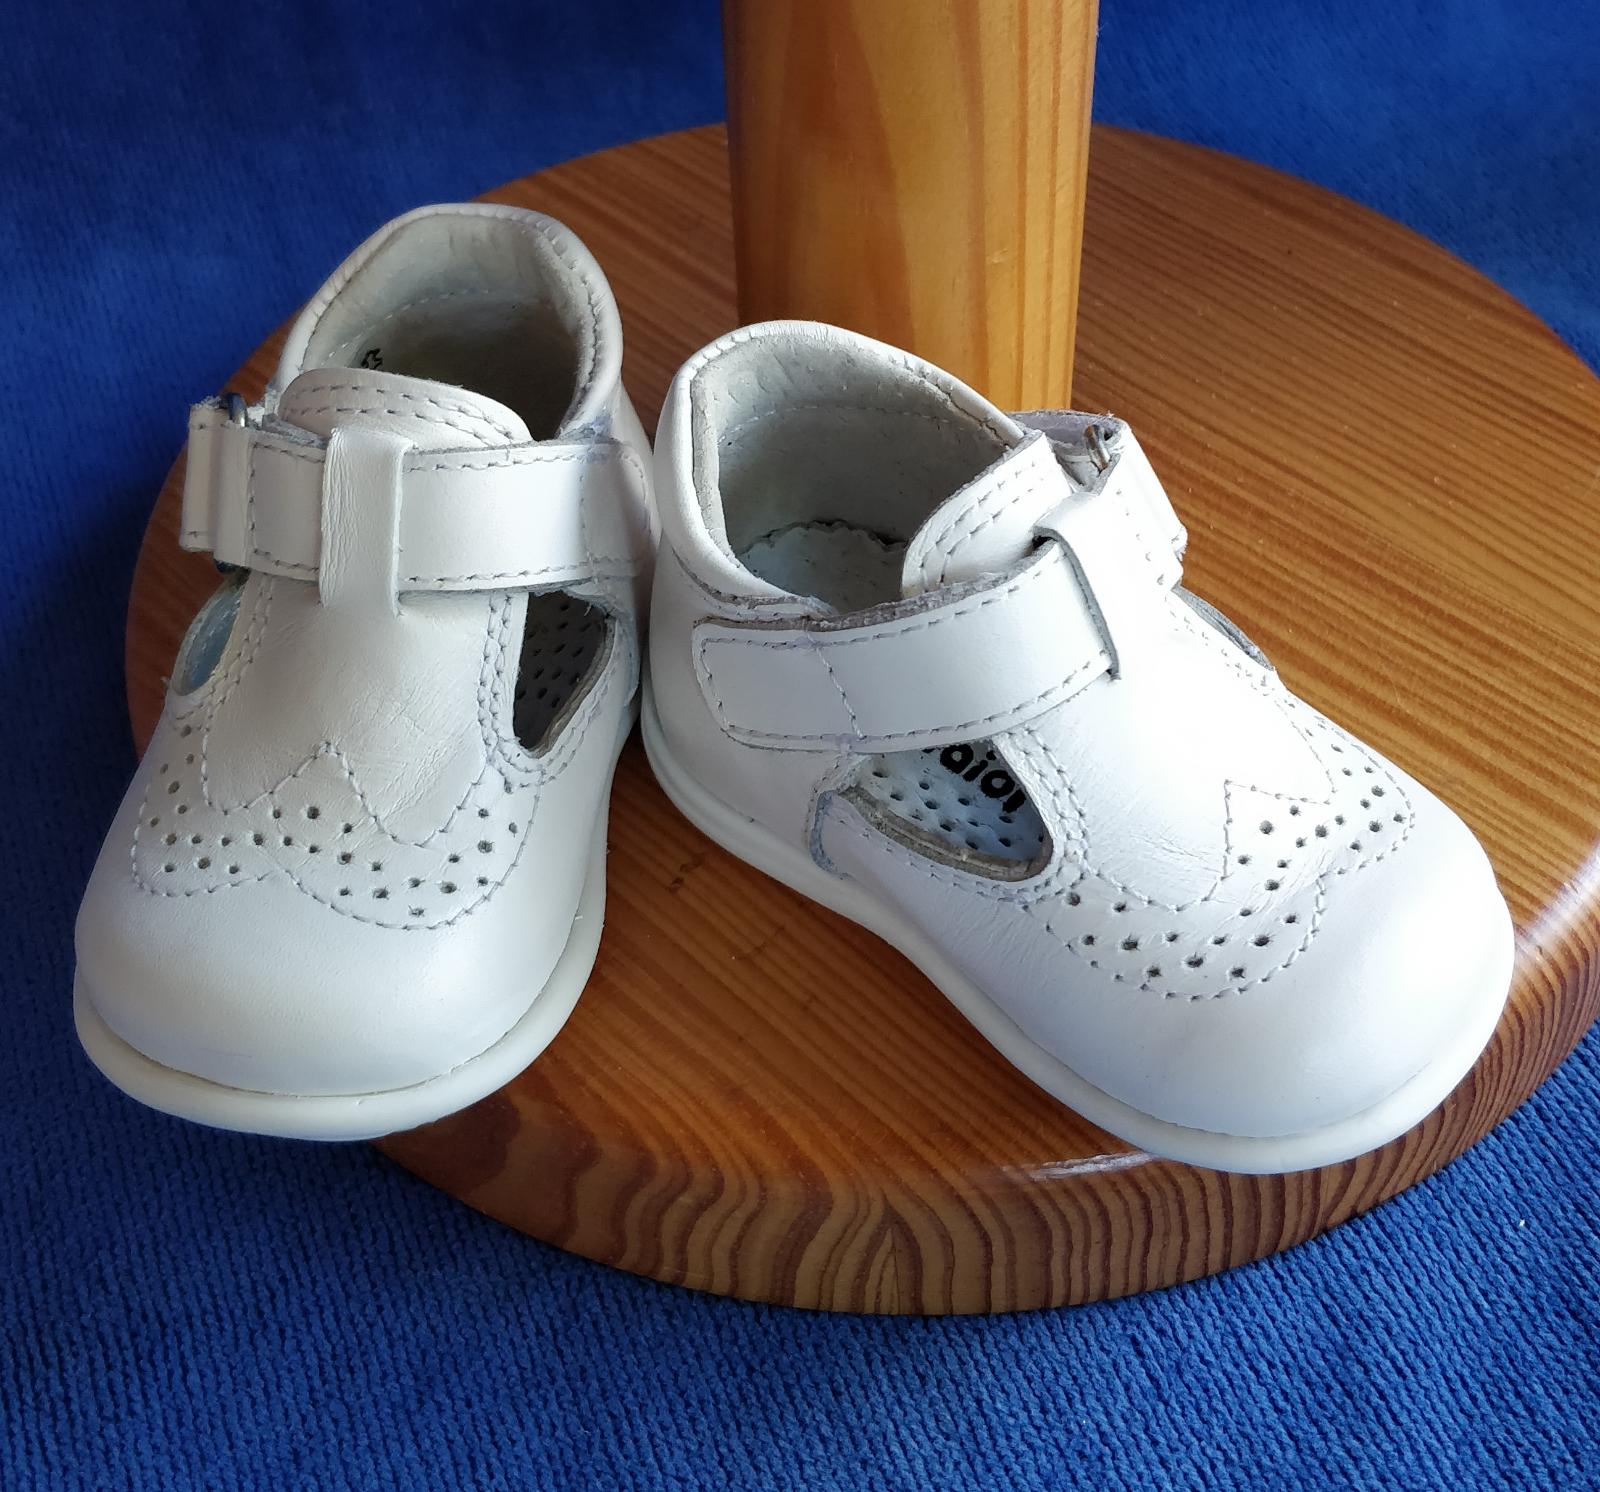 Chaussures Bébé Garçon, Chaussures De Baptême